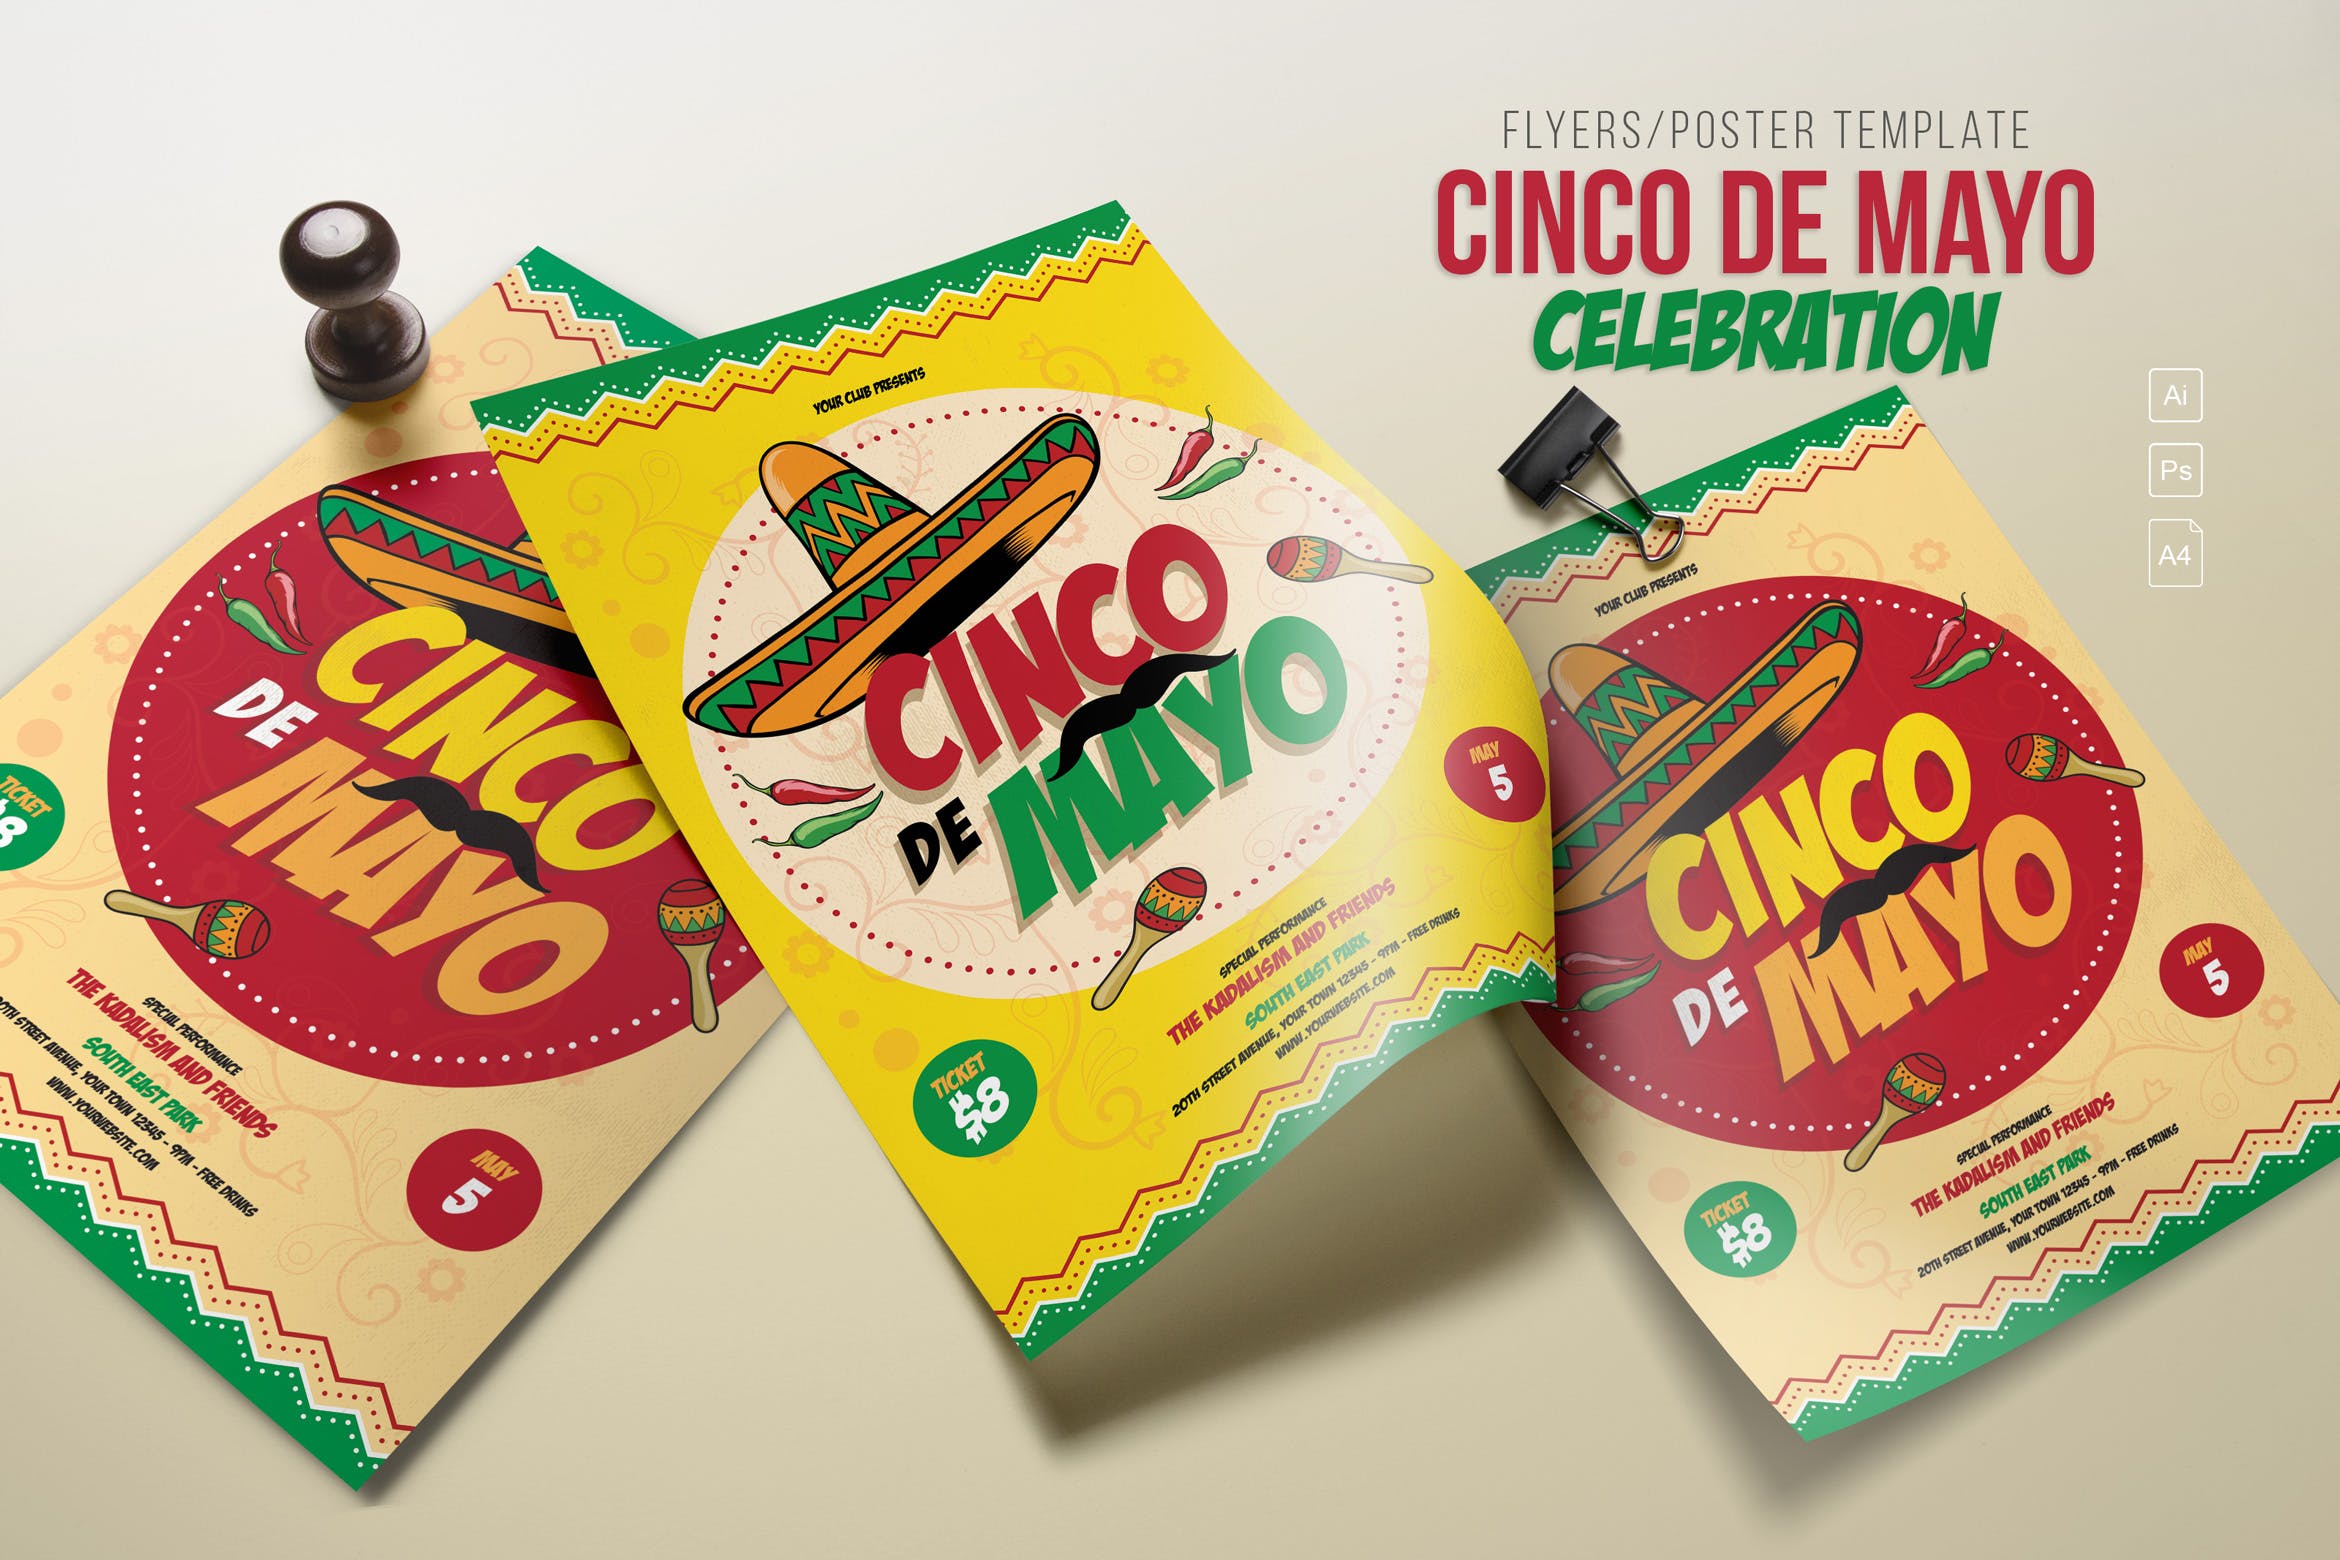 五月五日墨西哥爱国主义节日庆祝活动海报PSD素材非凡图库精选模板 Cinco de Mayo Celebration插图